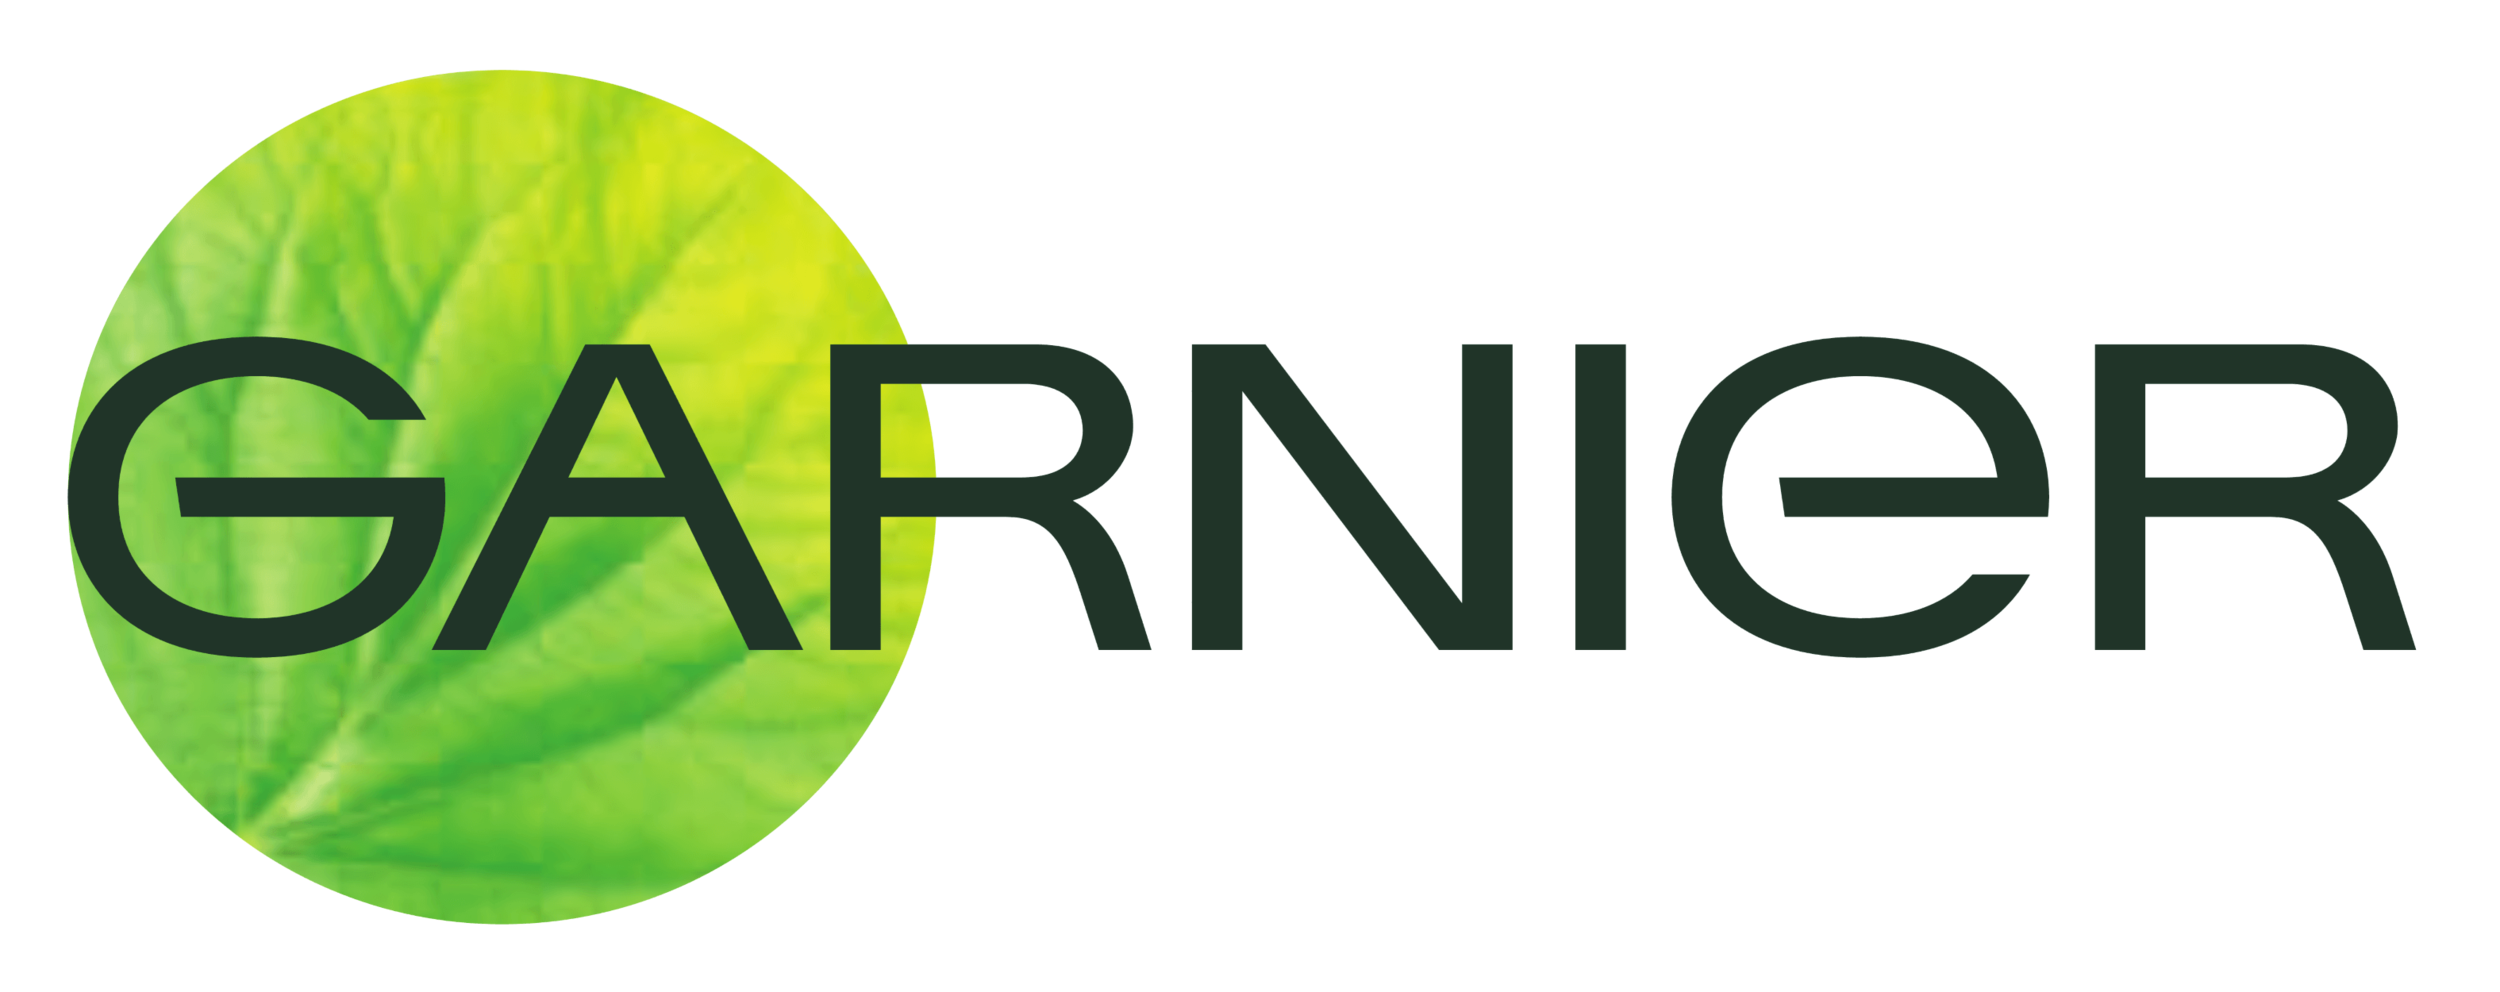 Garnier_logo.png